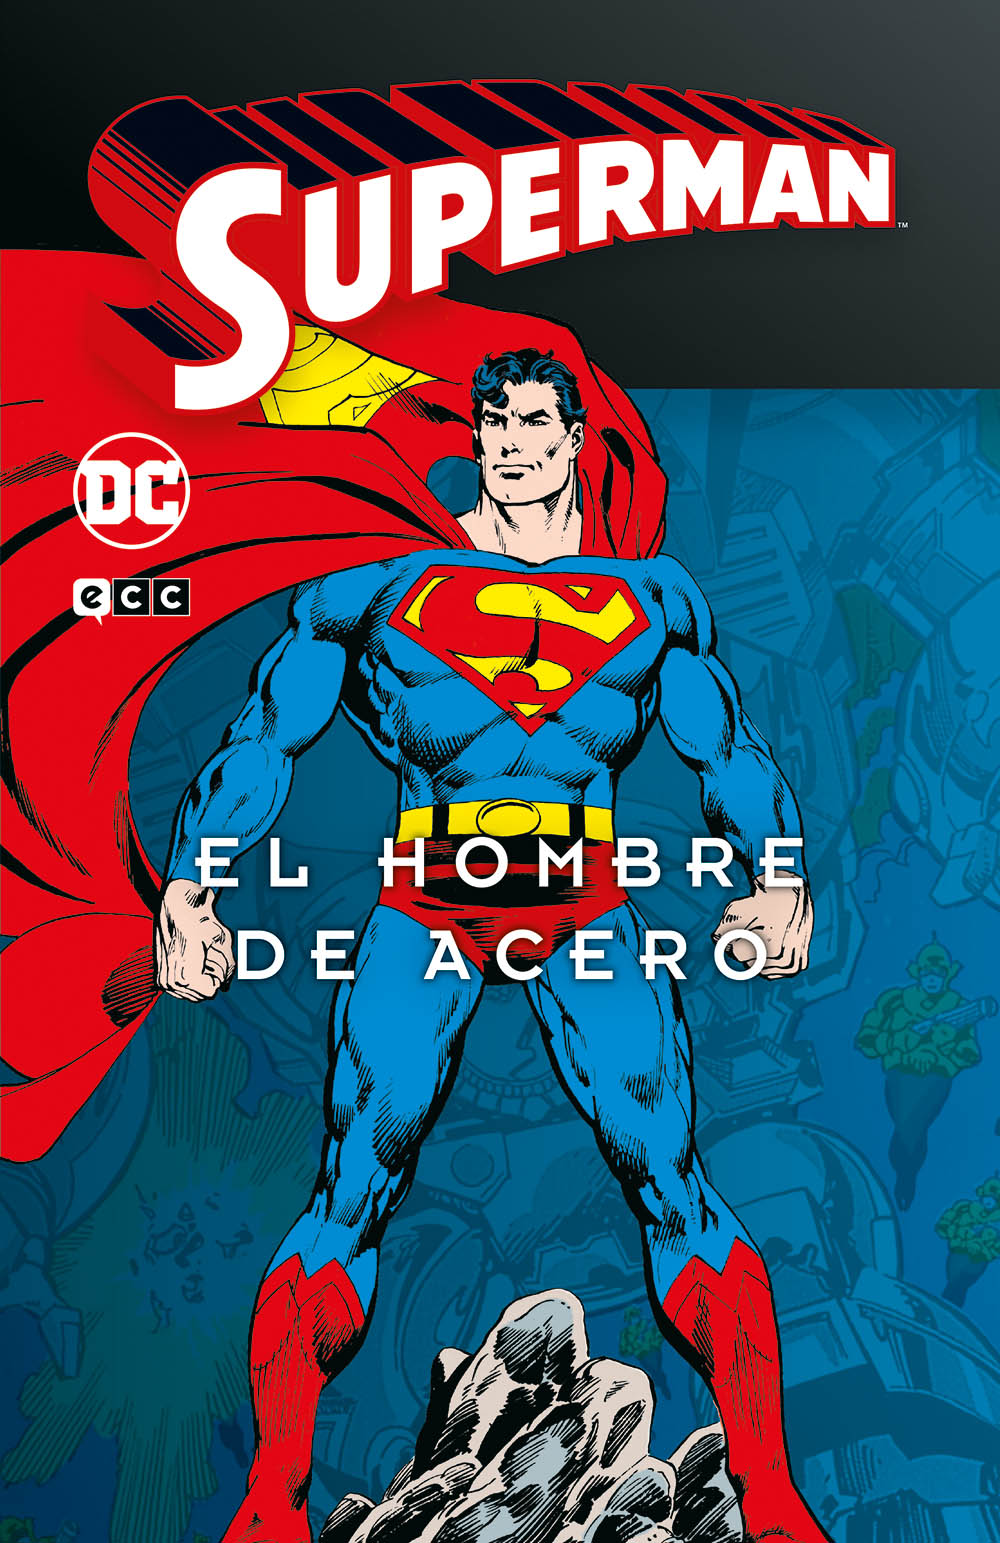 Superman: El hombre de acero vol. 1 de 4 (Superman Legends) Cinecolor ENcuadrocomics